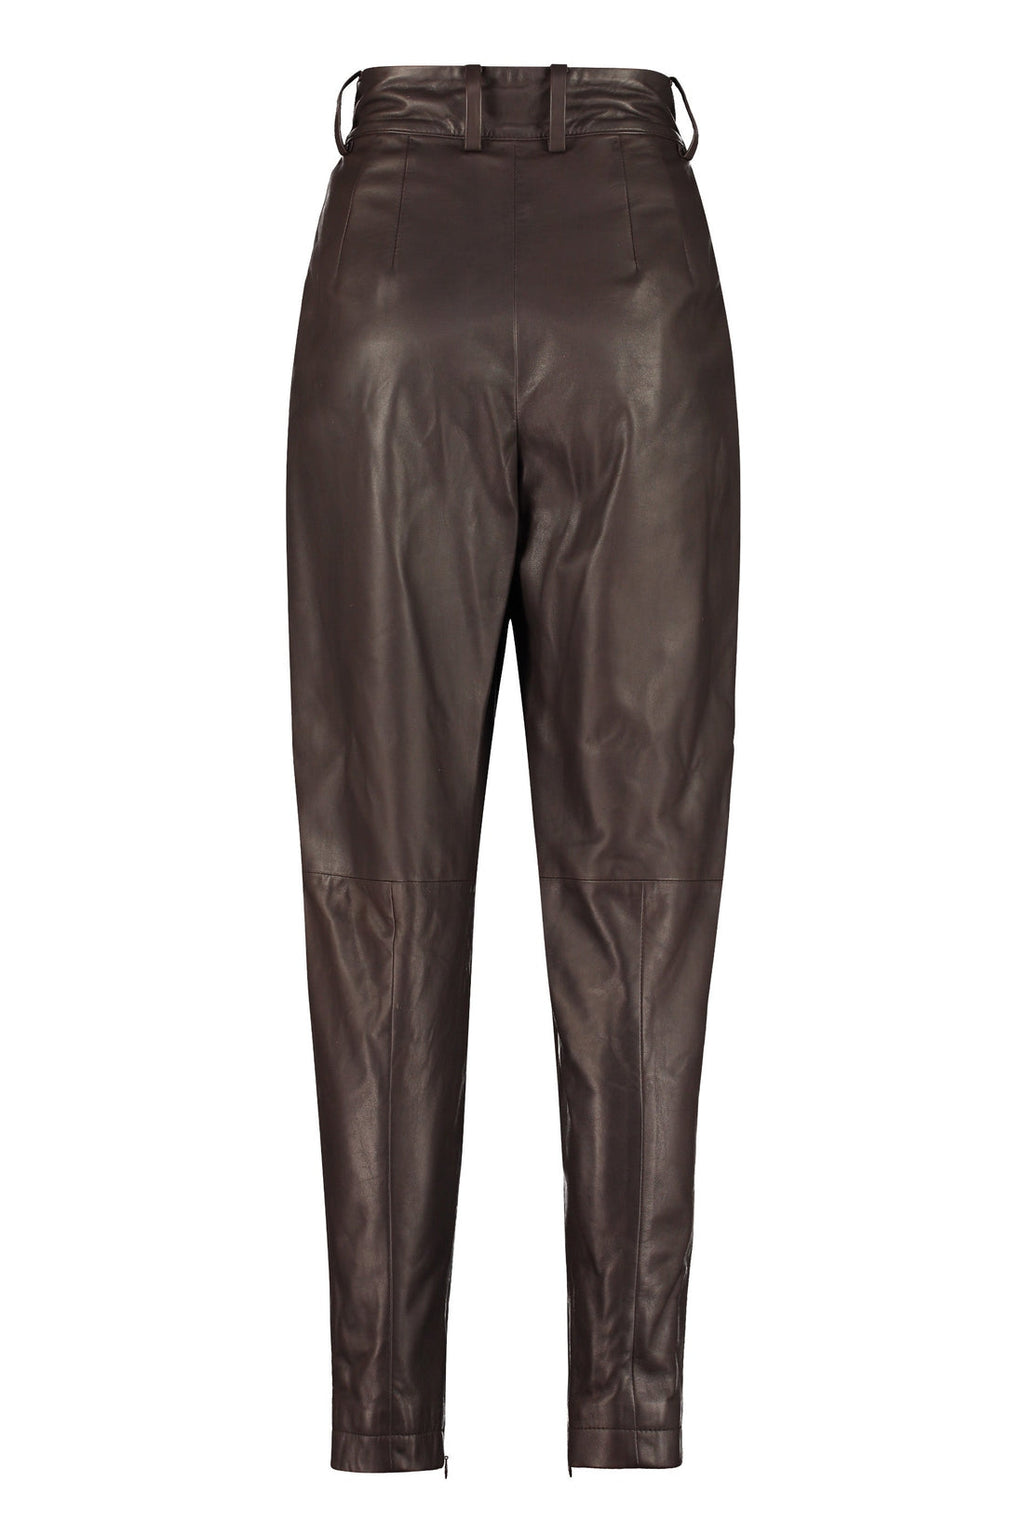 Dolce & Gabbana-OUTLET-SALE-Leather pants-ARCHIVIST